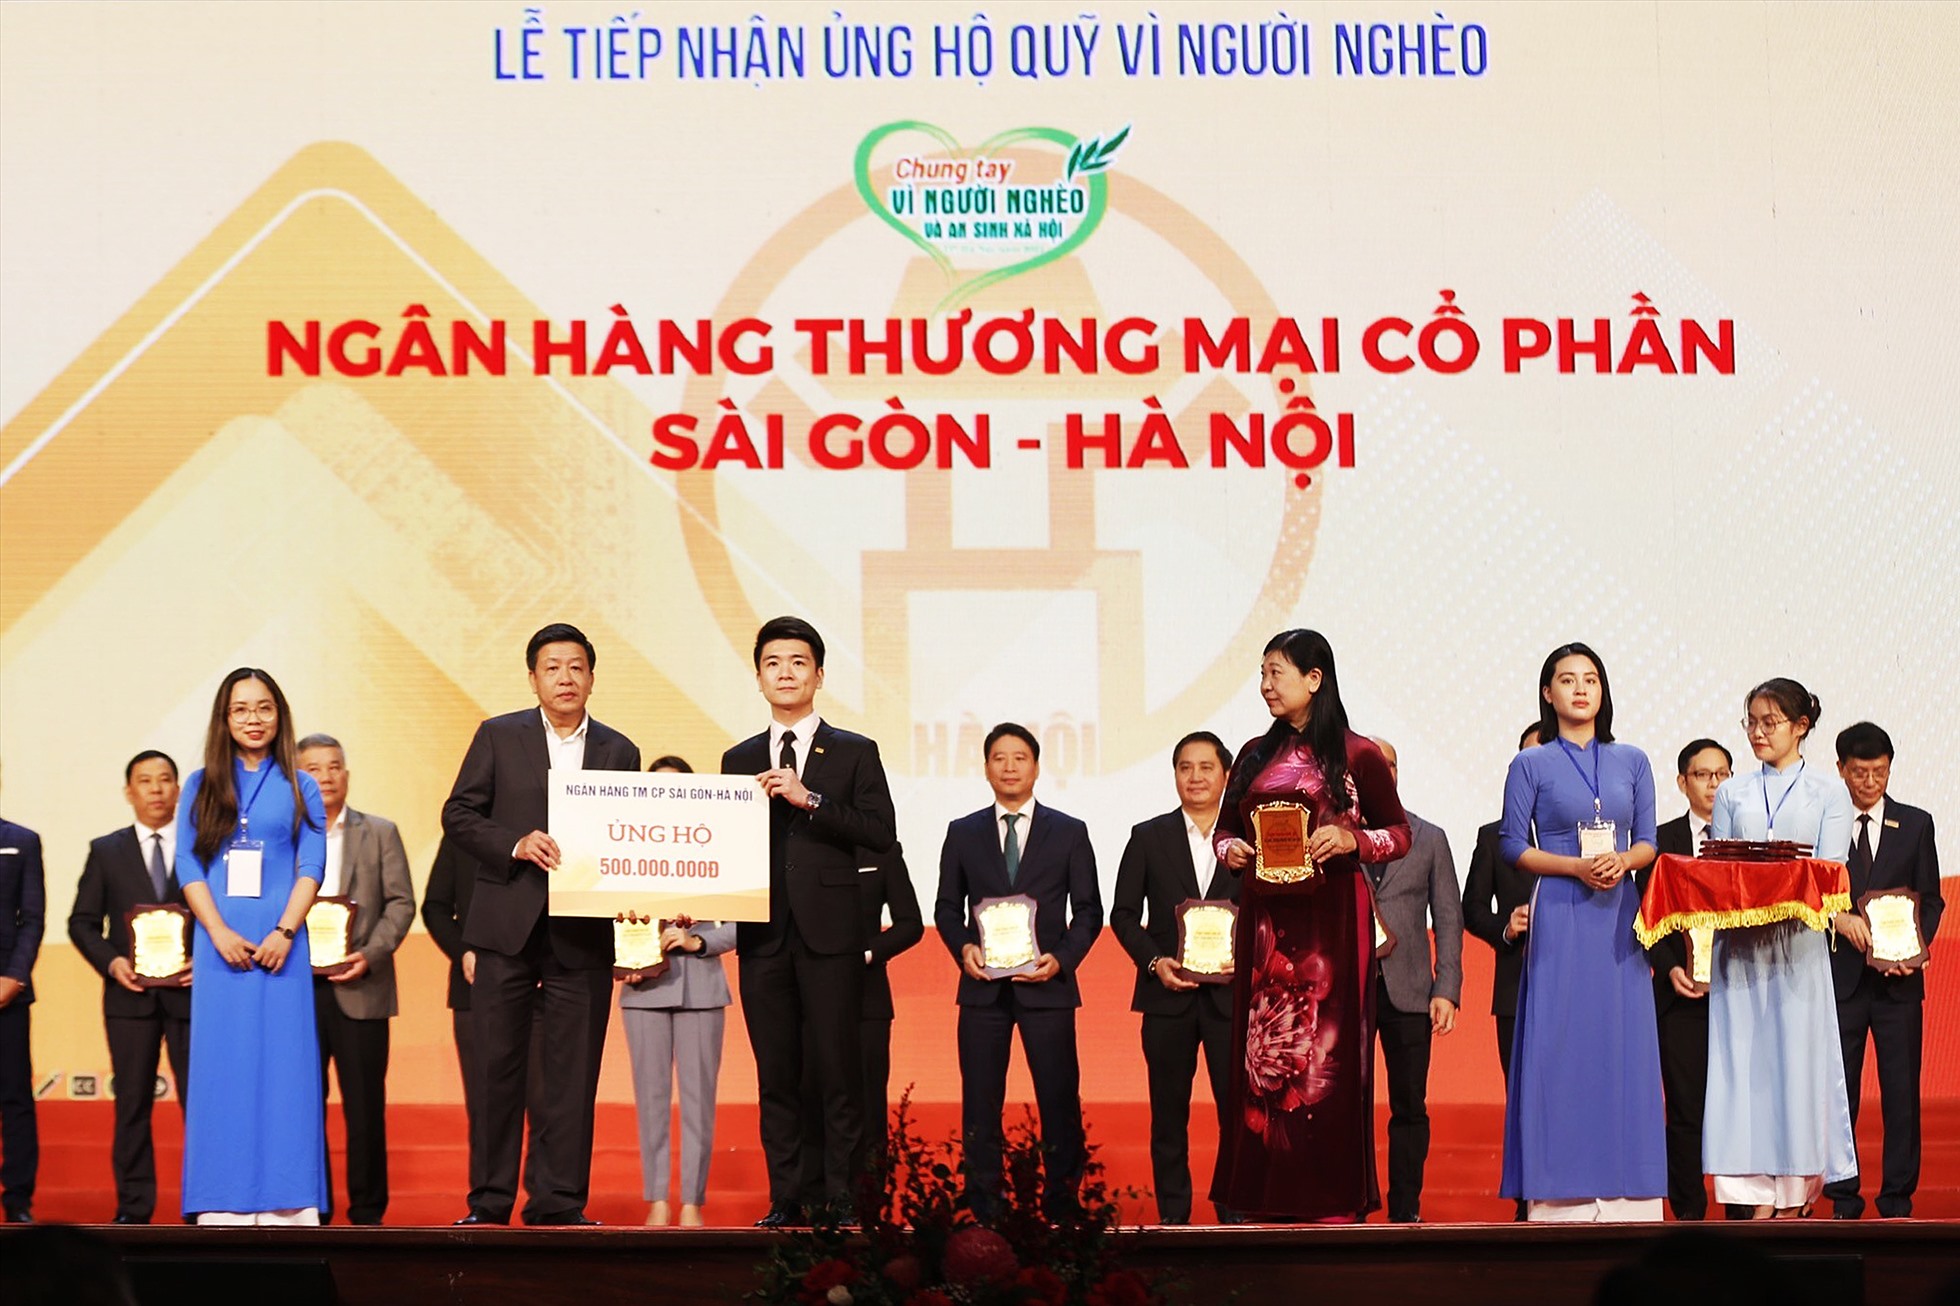 Thành viên HĐQT kiêm PTGĐ Đỗ Quang Vinh đại diện SHB ủng hộ 500 triệu đồng cho quỹ Vì người nghèo thành phố Hà Nội.